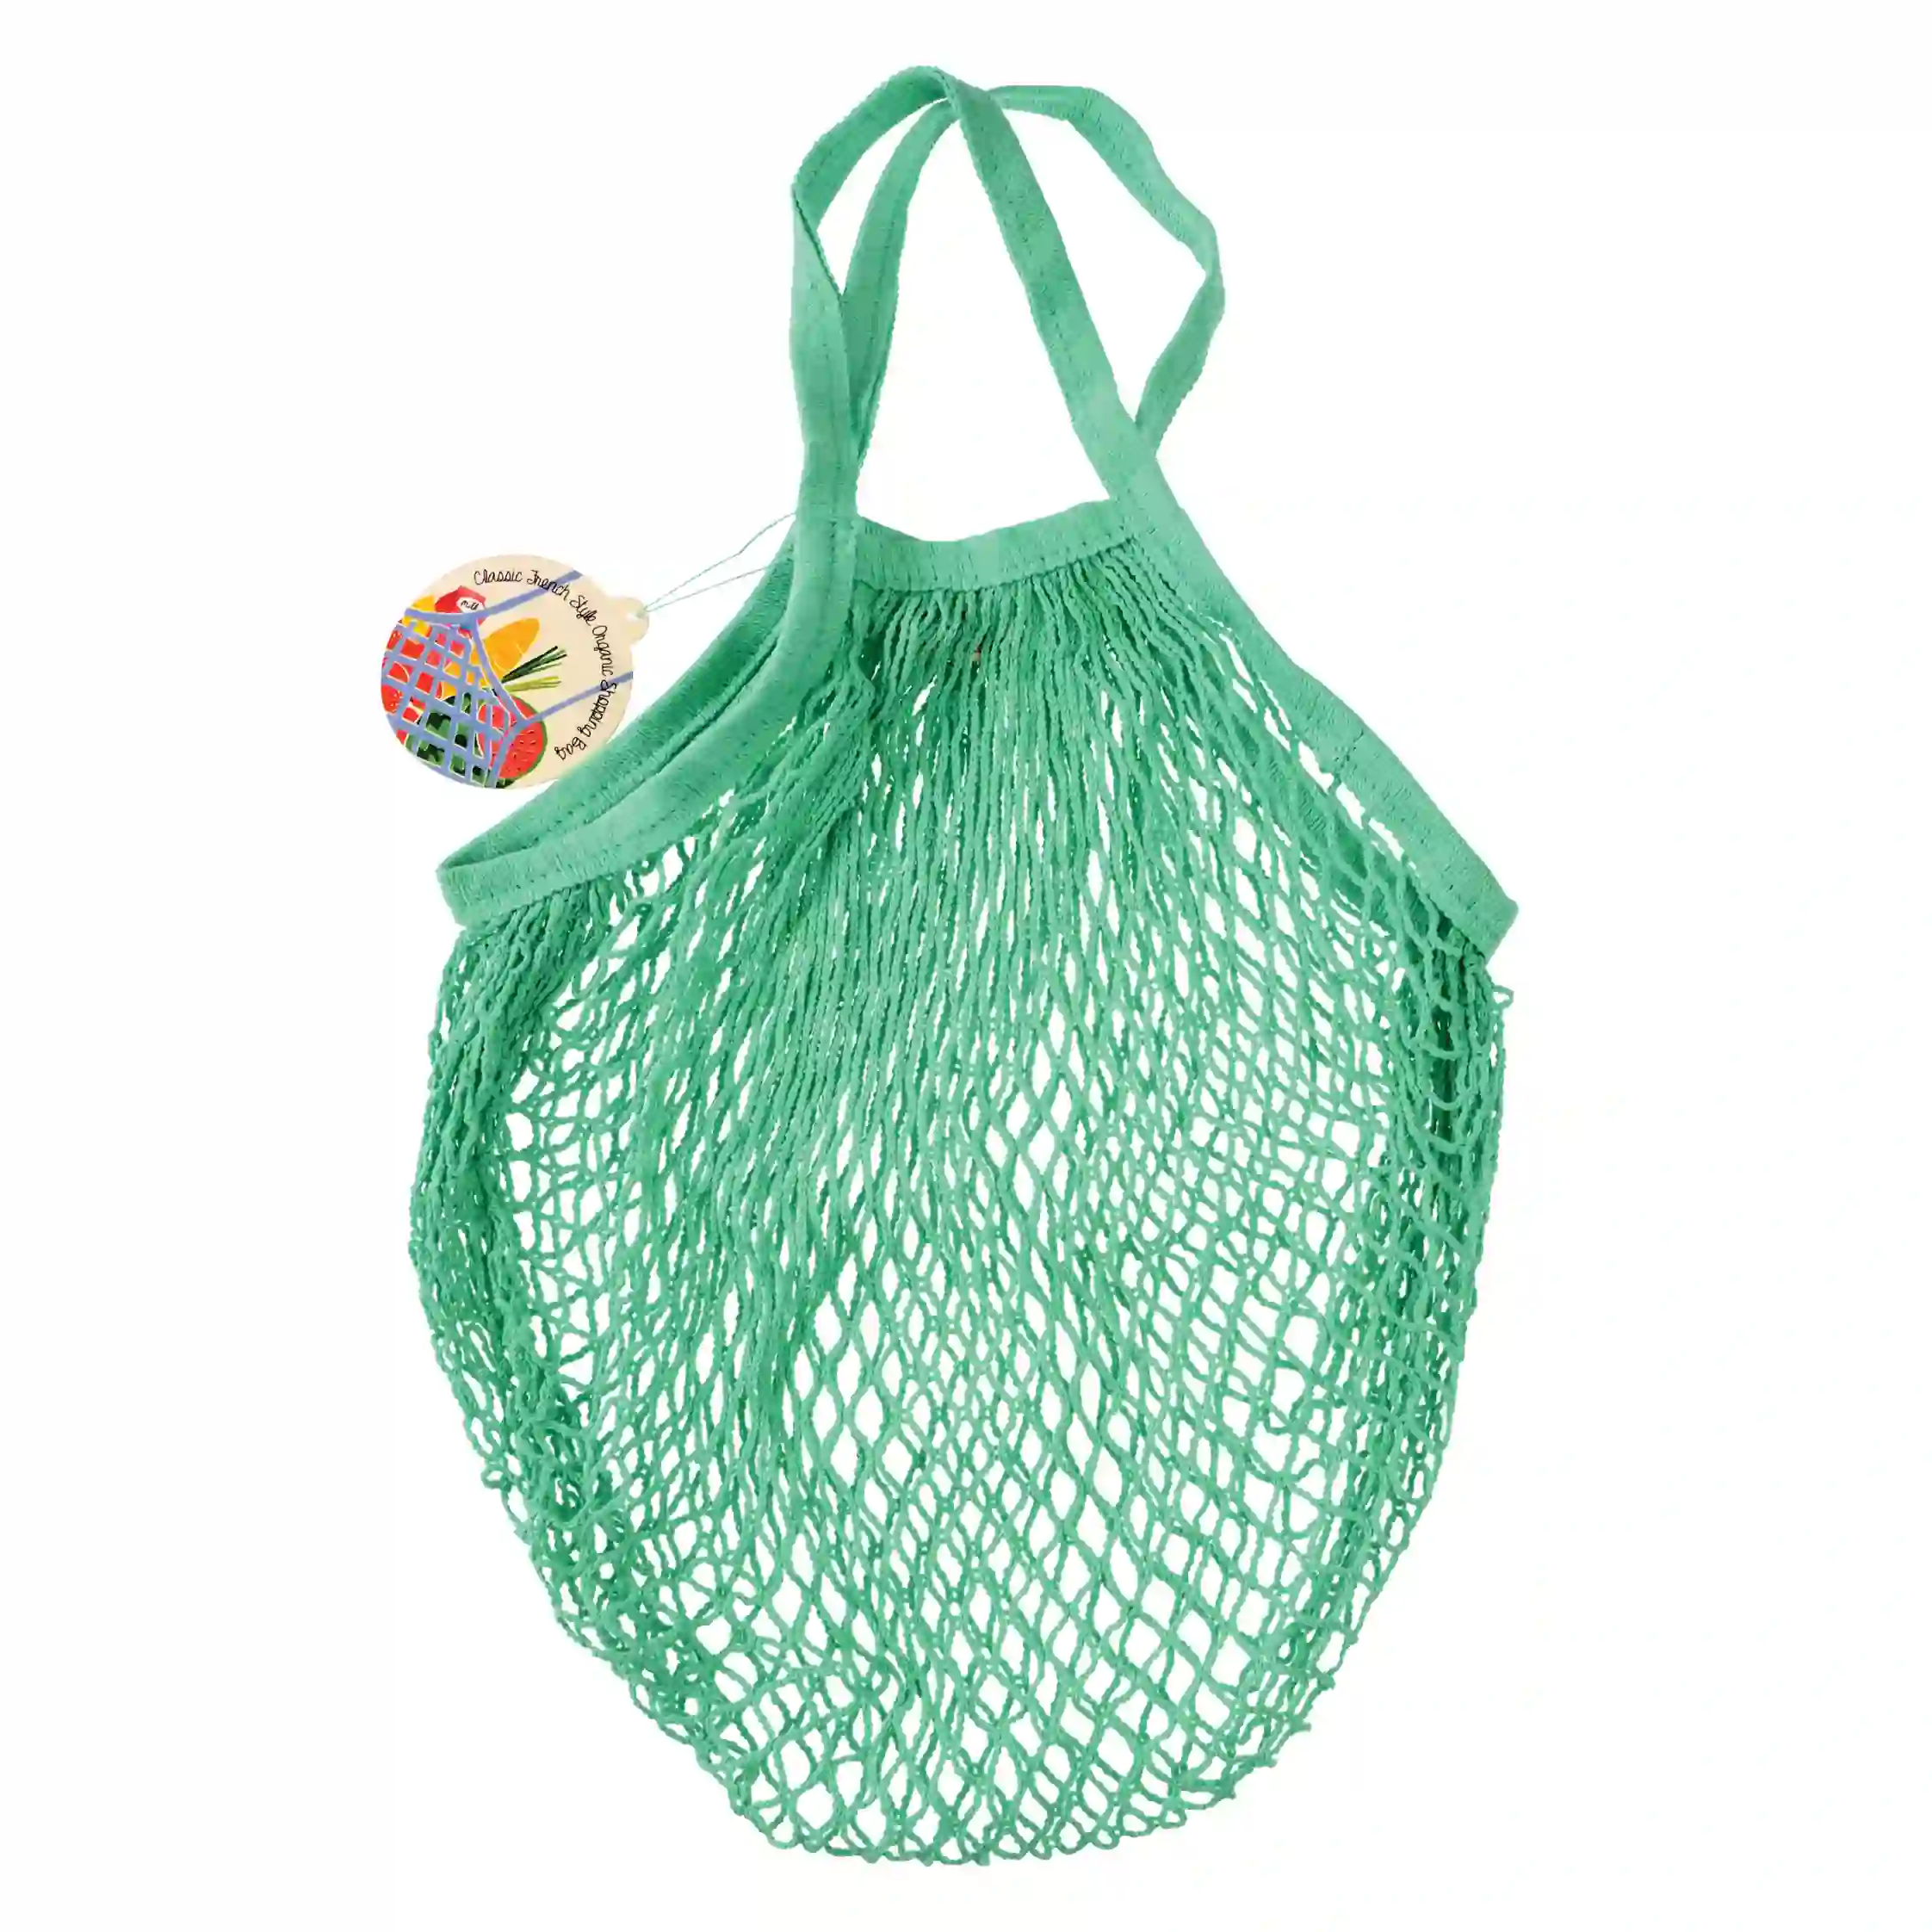 organic cotton net bag - mint green